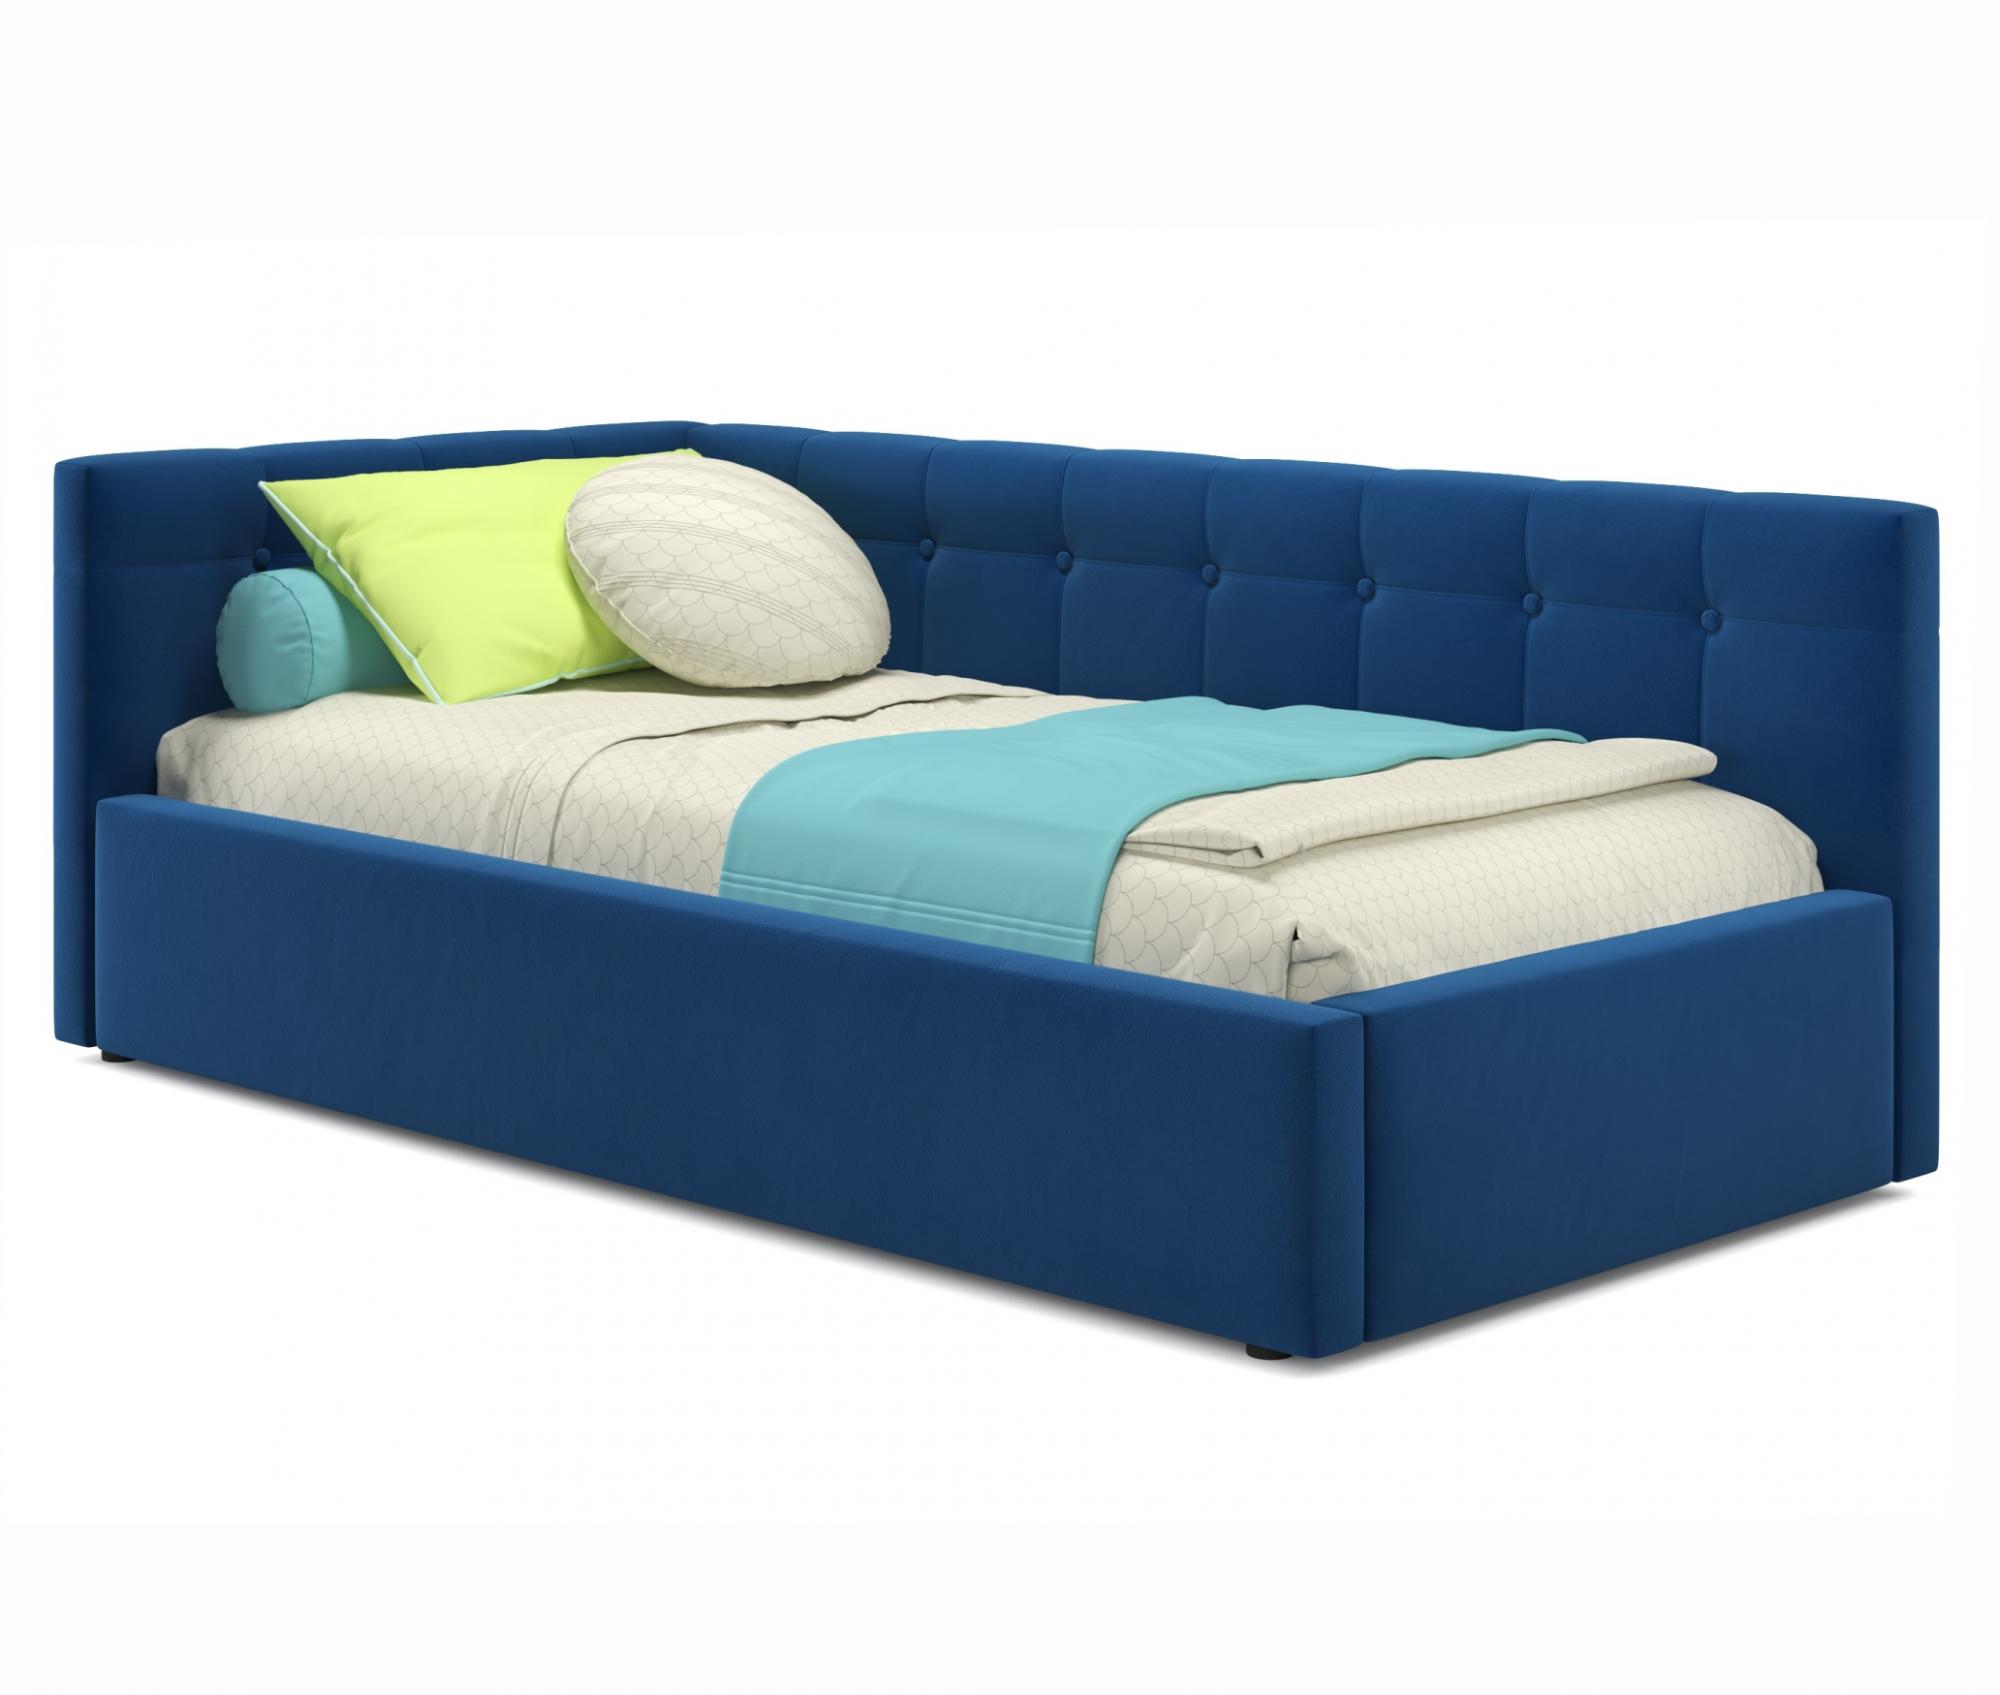 Купить односпальная кровать-тахта bonna 900 синяя с подъемным механизмом иматрасом promo b cocos и мягкими боковыми спинками